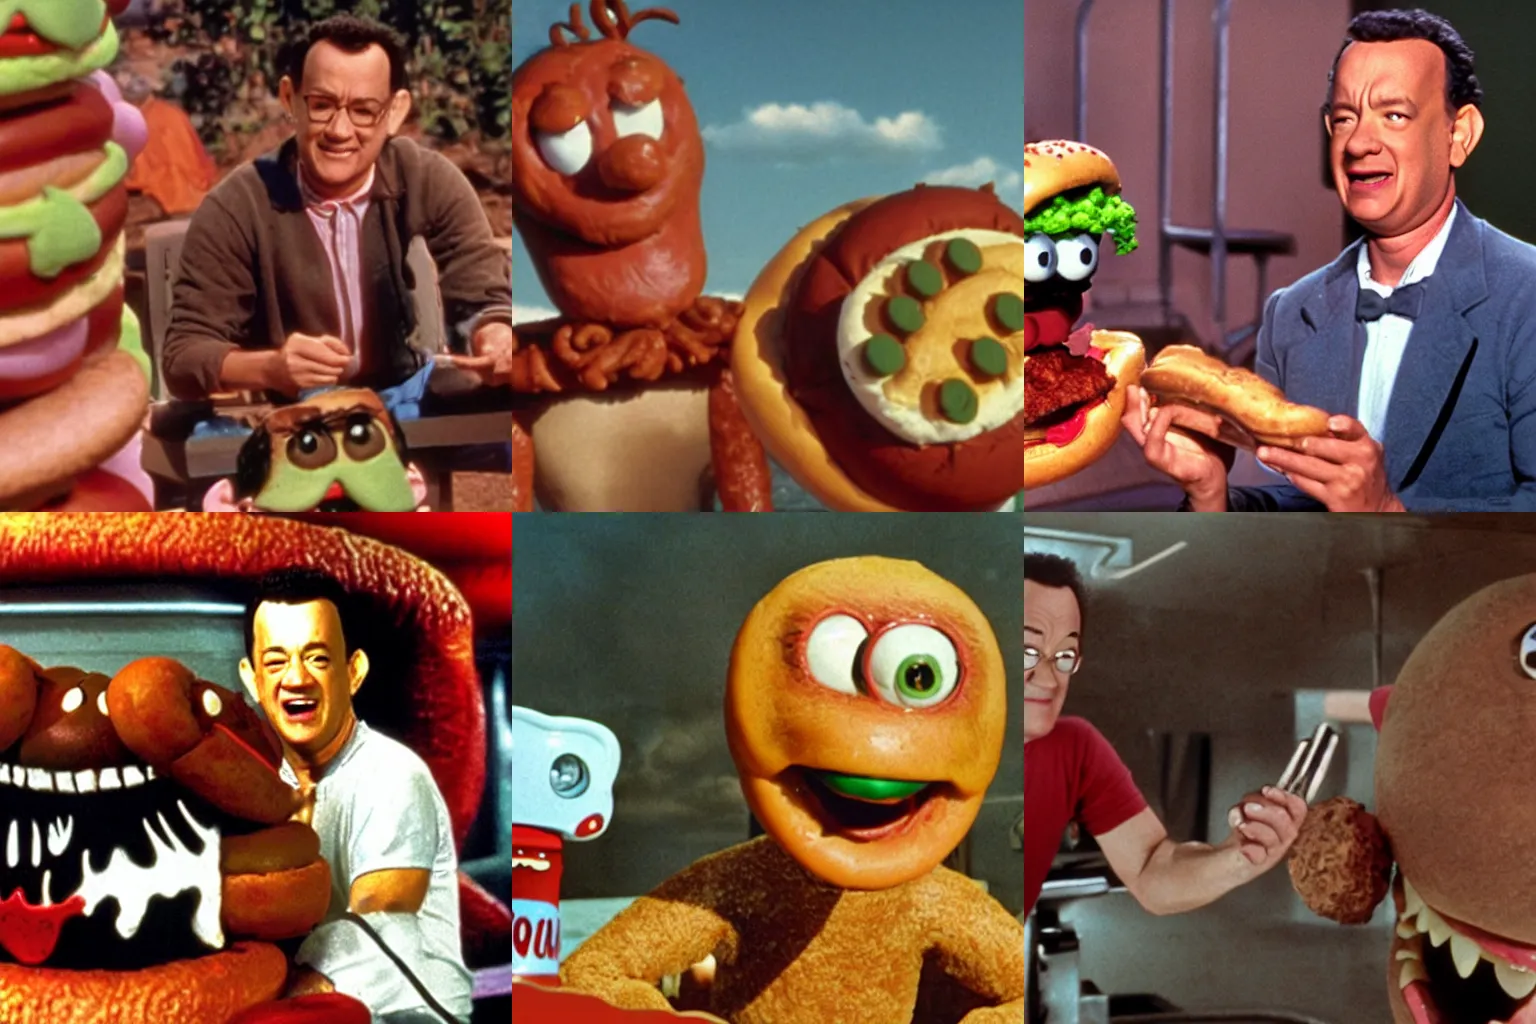 Prompt: Color movie still of Tom Hanks in 'Hot Dog monster vs Hamburger monster' by Ray Harryhausen